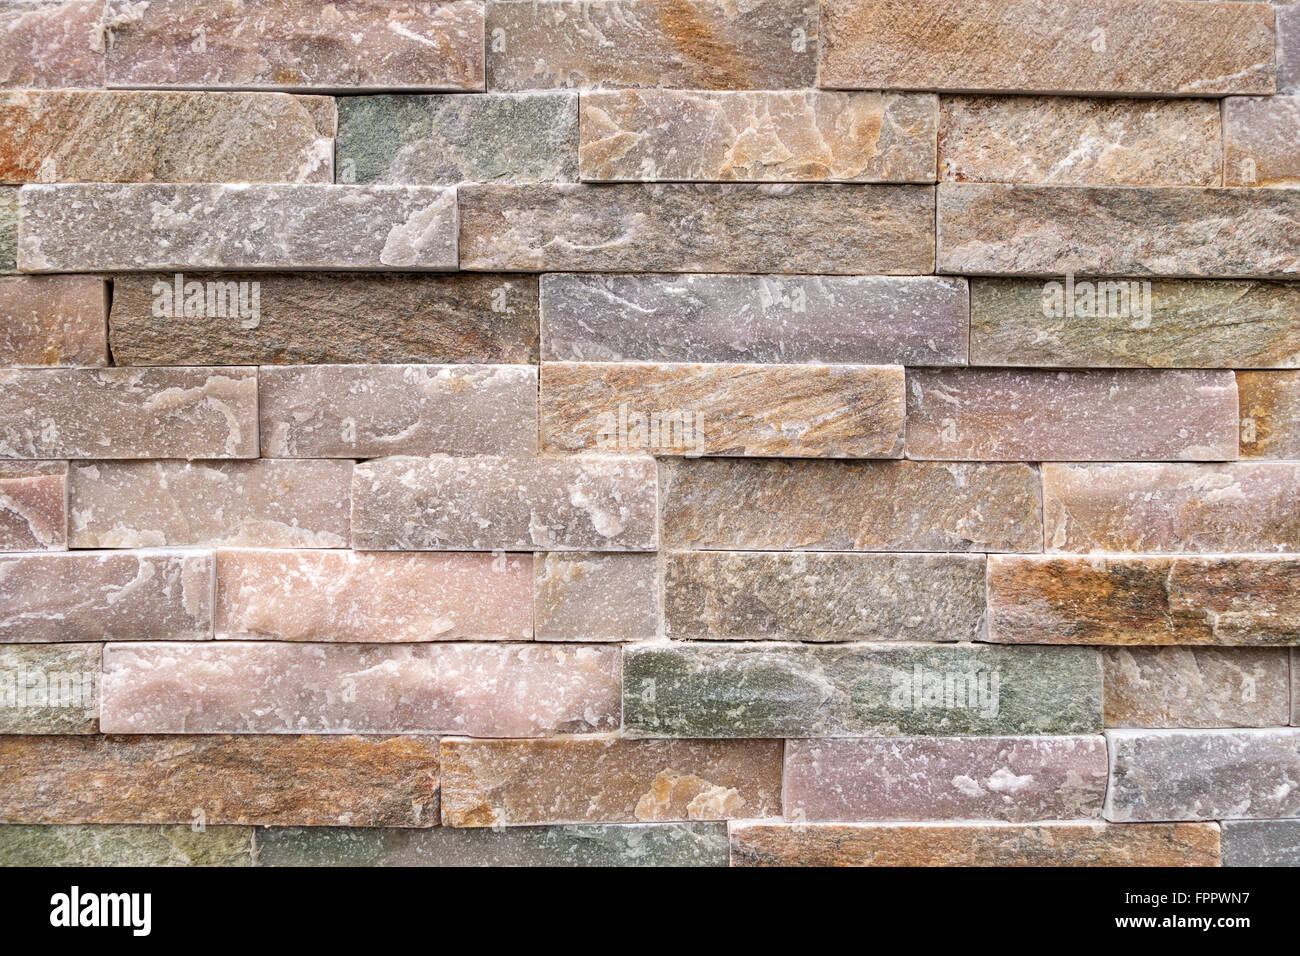 Detalle de un muro de piedra de tosca, mirando las piedras de colores pastel Foto de stock